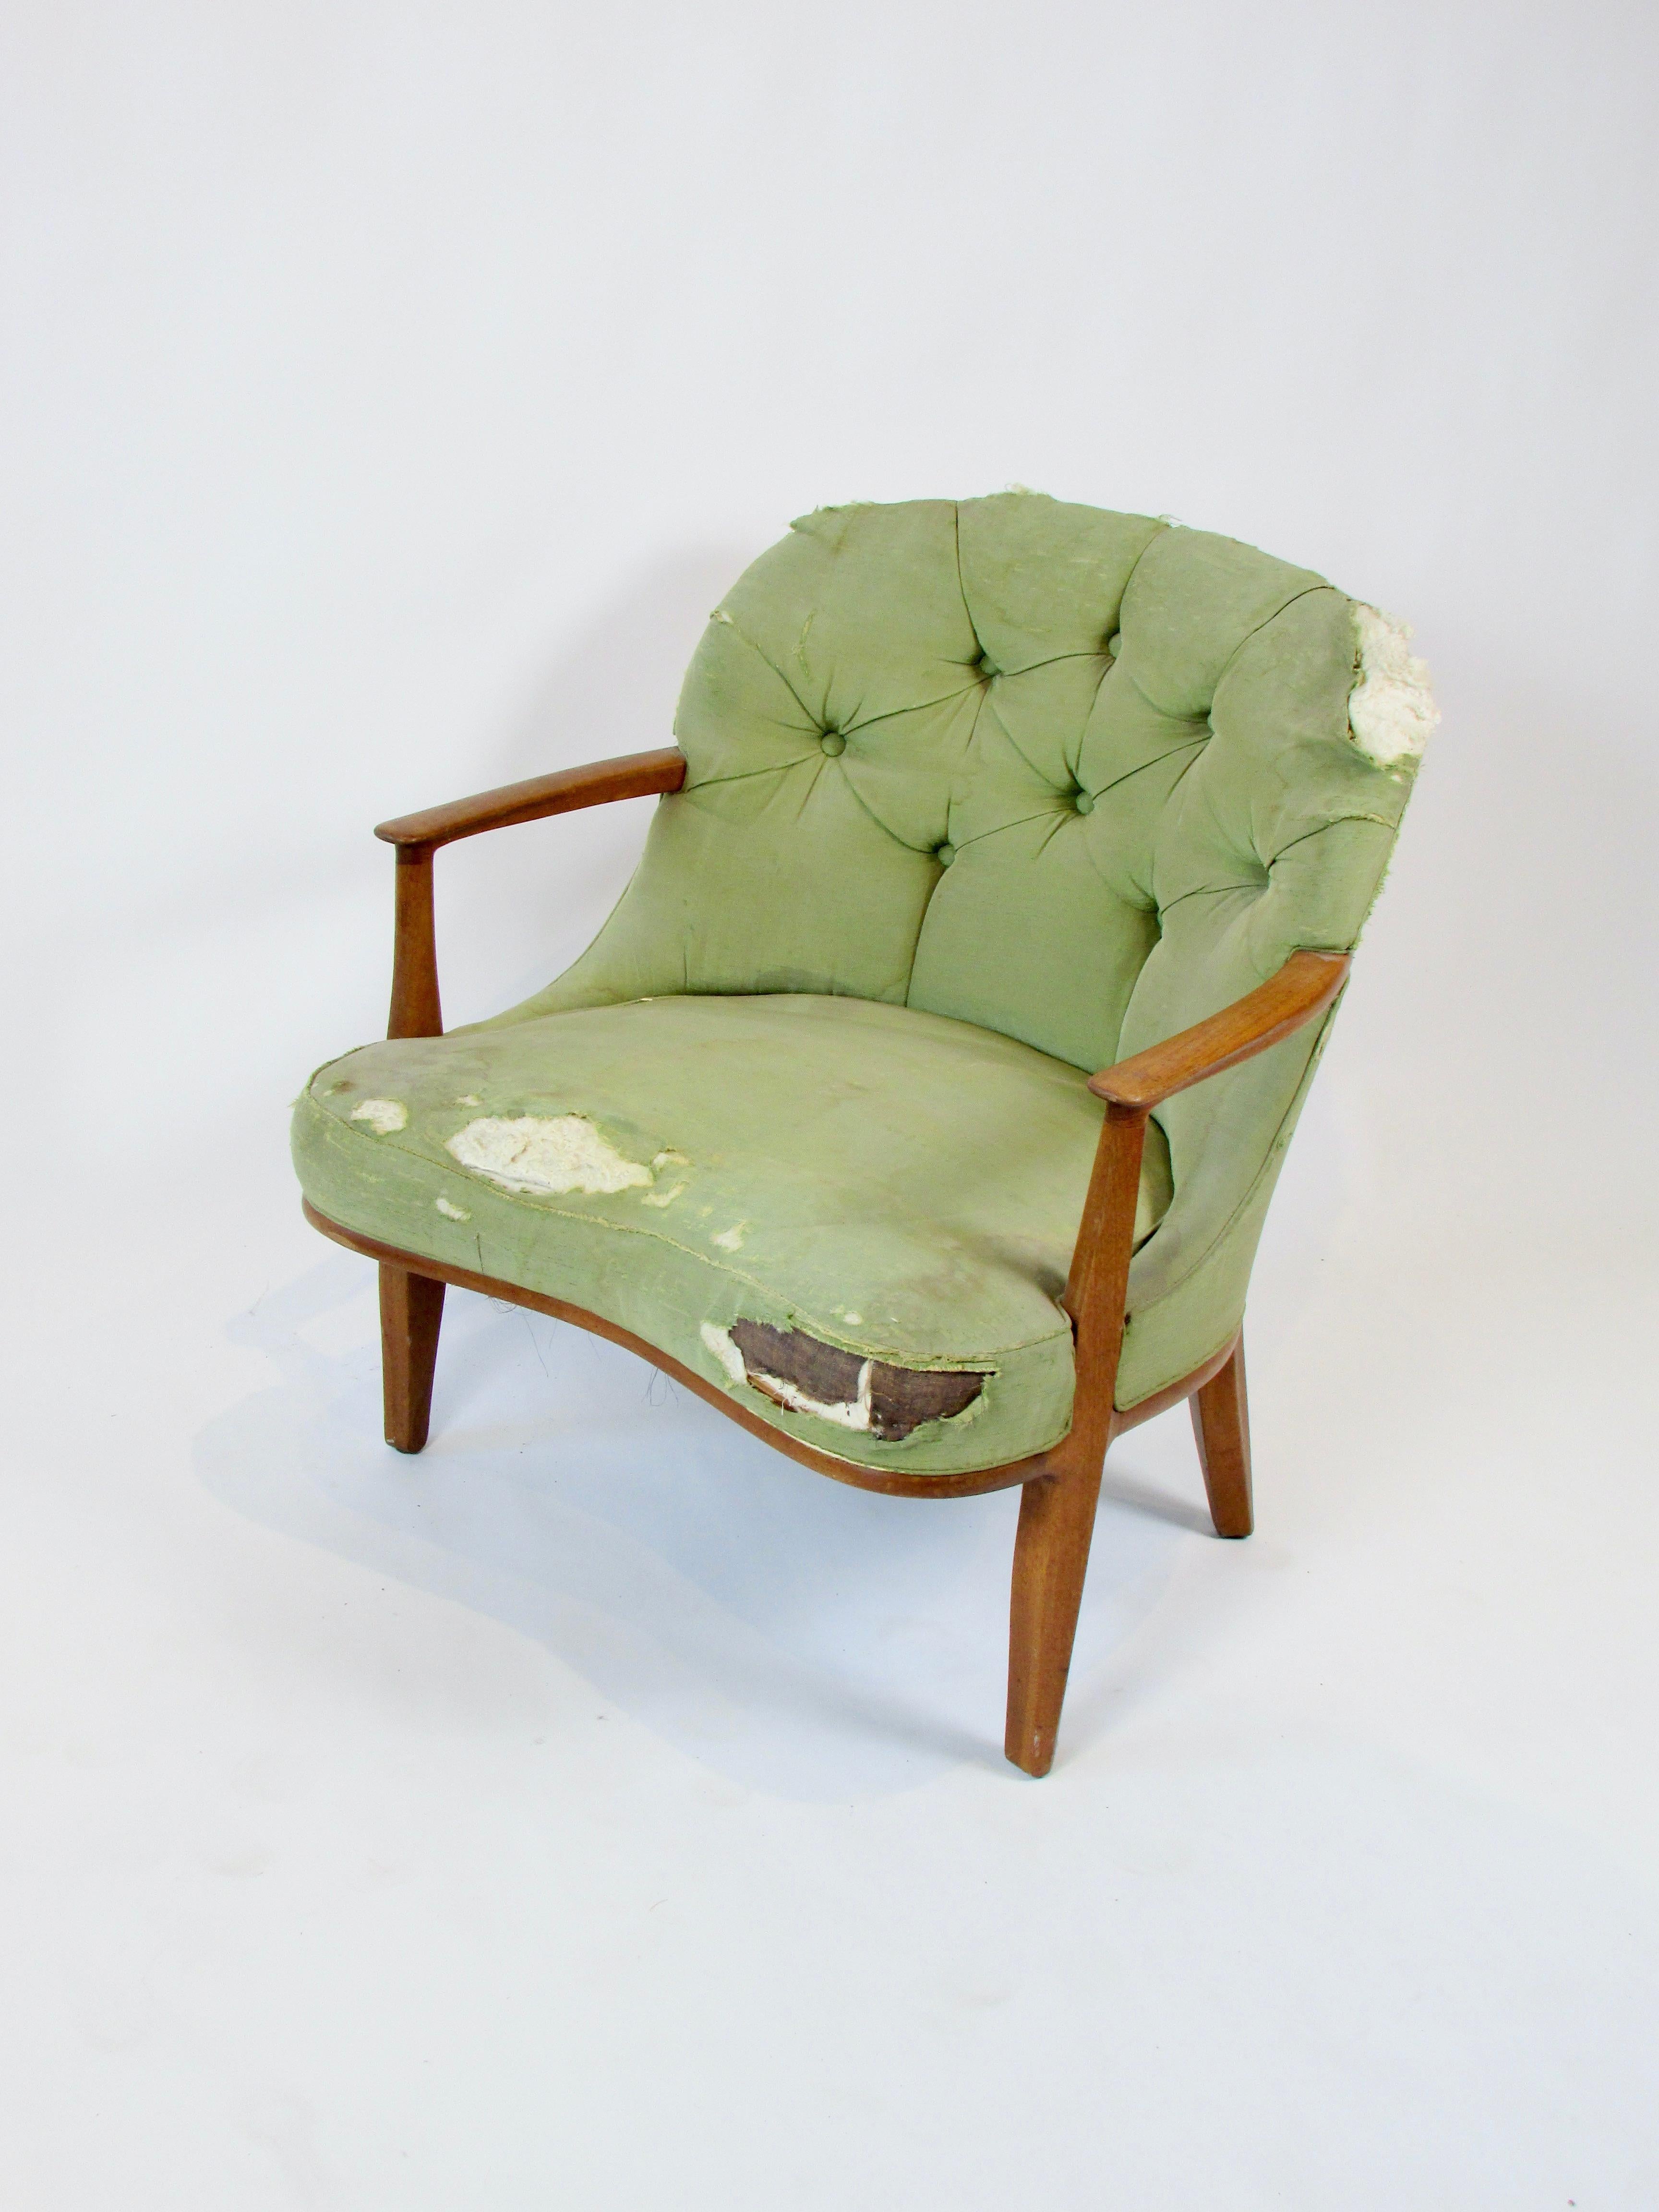 American As found  single Edward Wormley Dunbar wood trim Janus chair model 5705